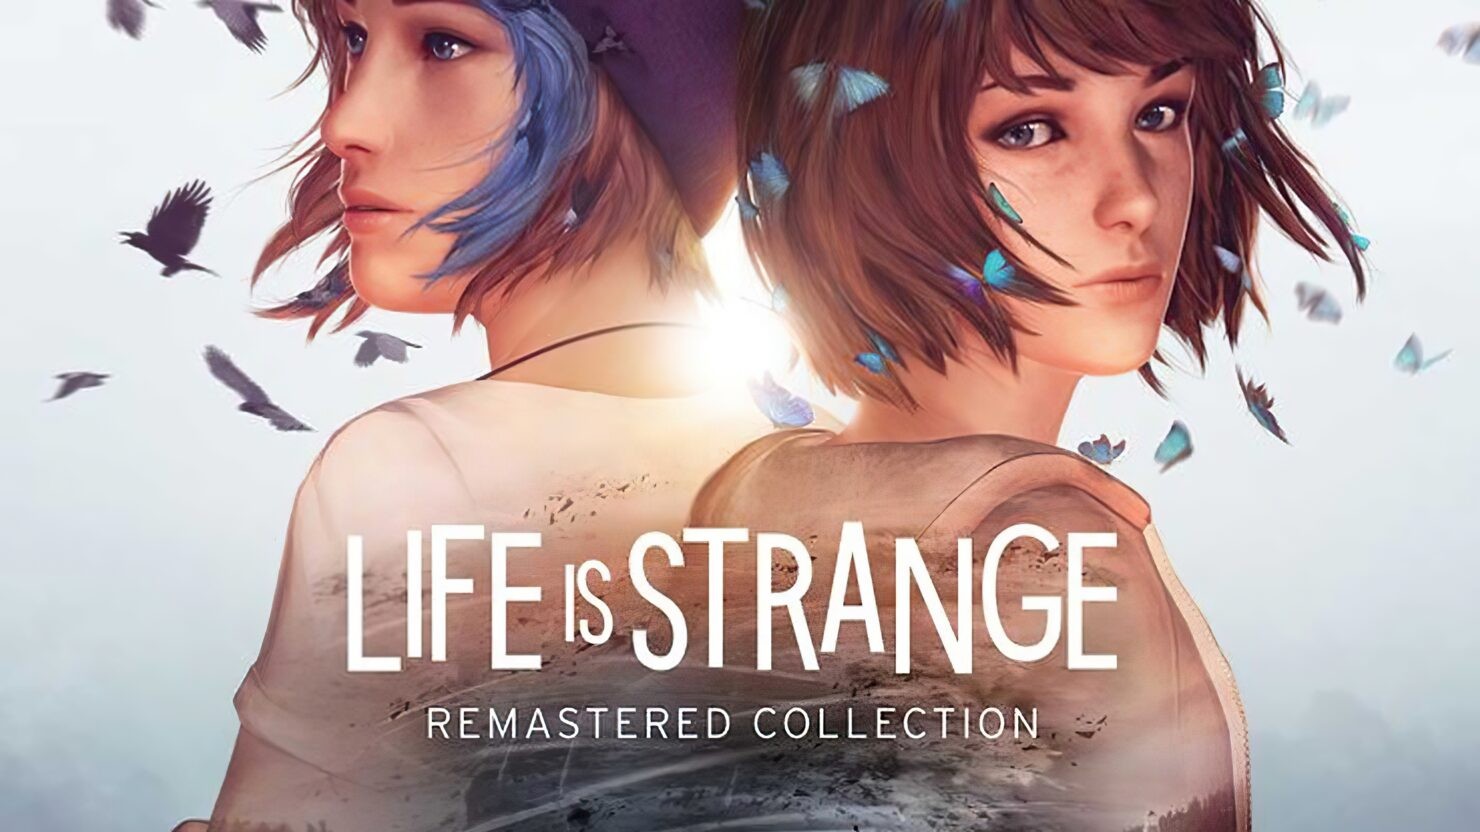 Life is Strange: Modelo de lançamento em episódios não deve retornar